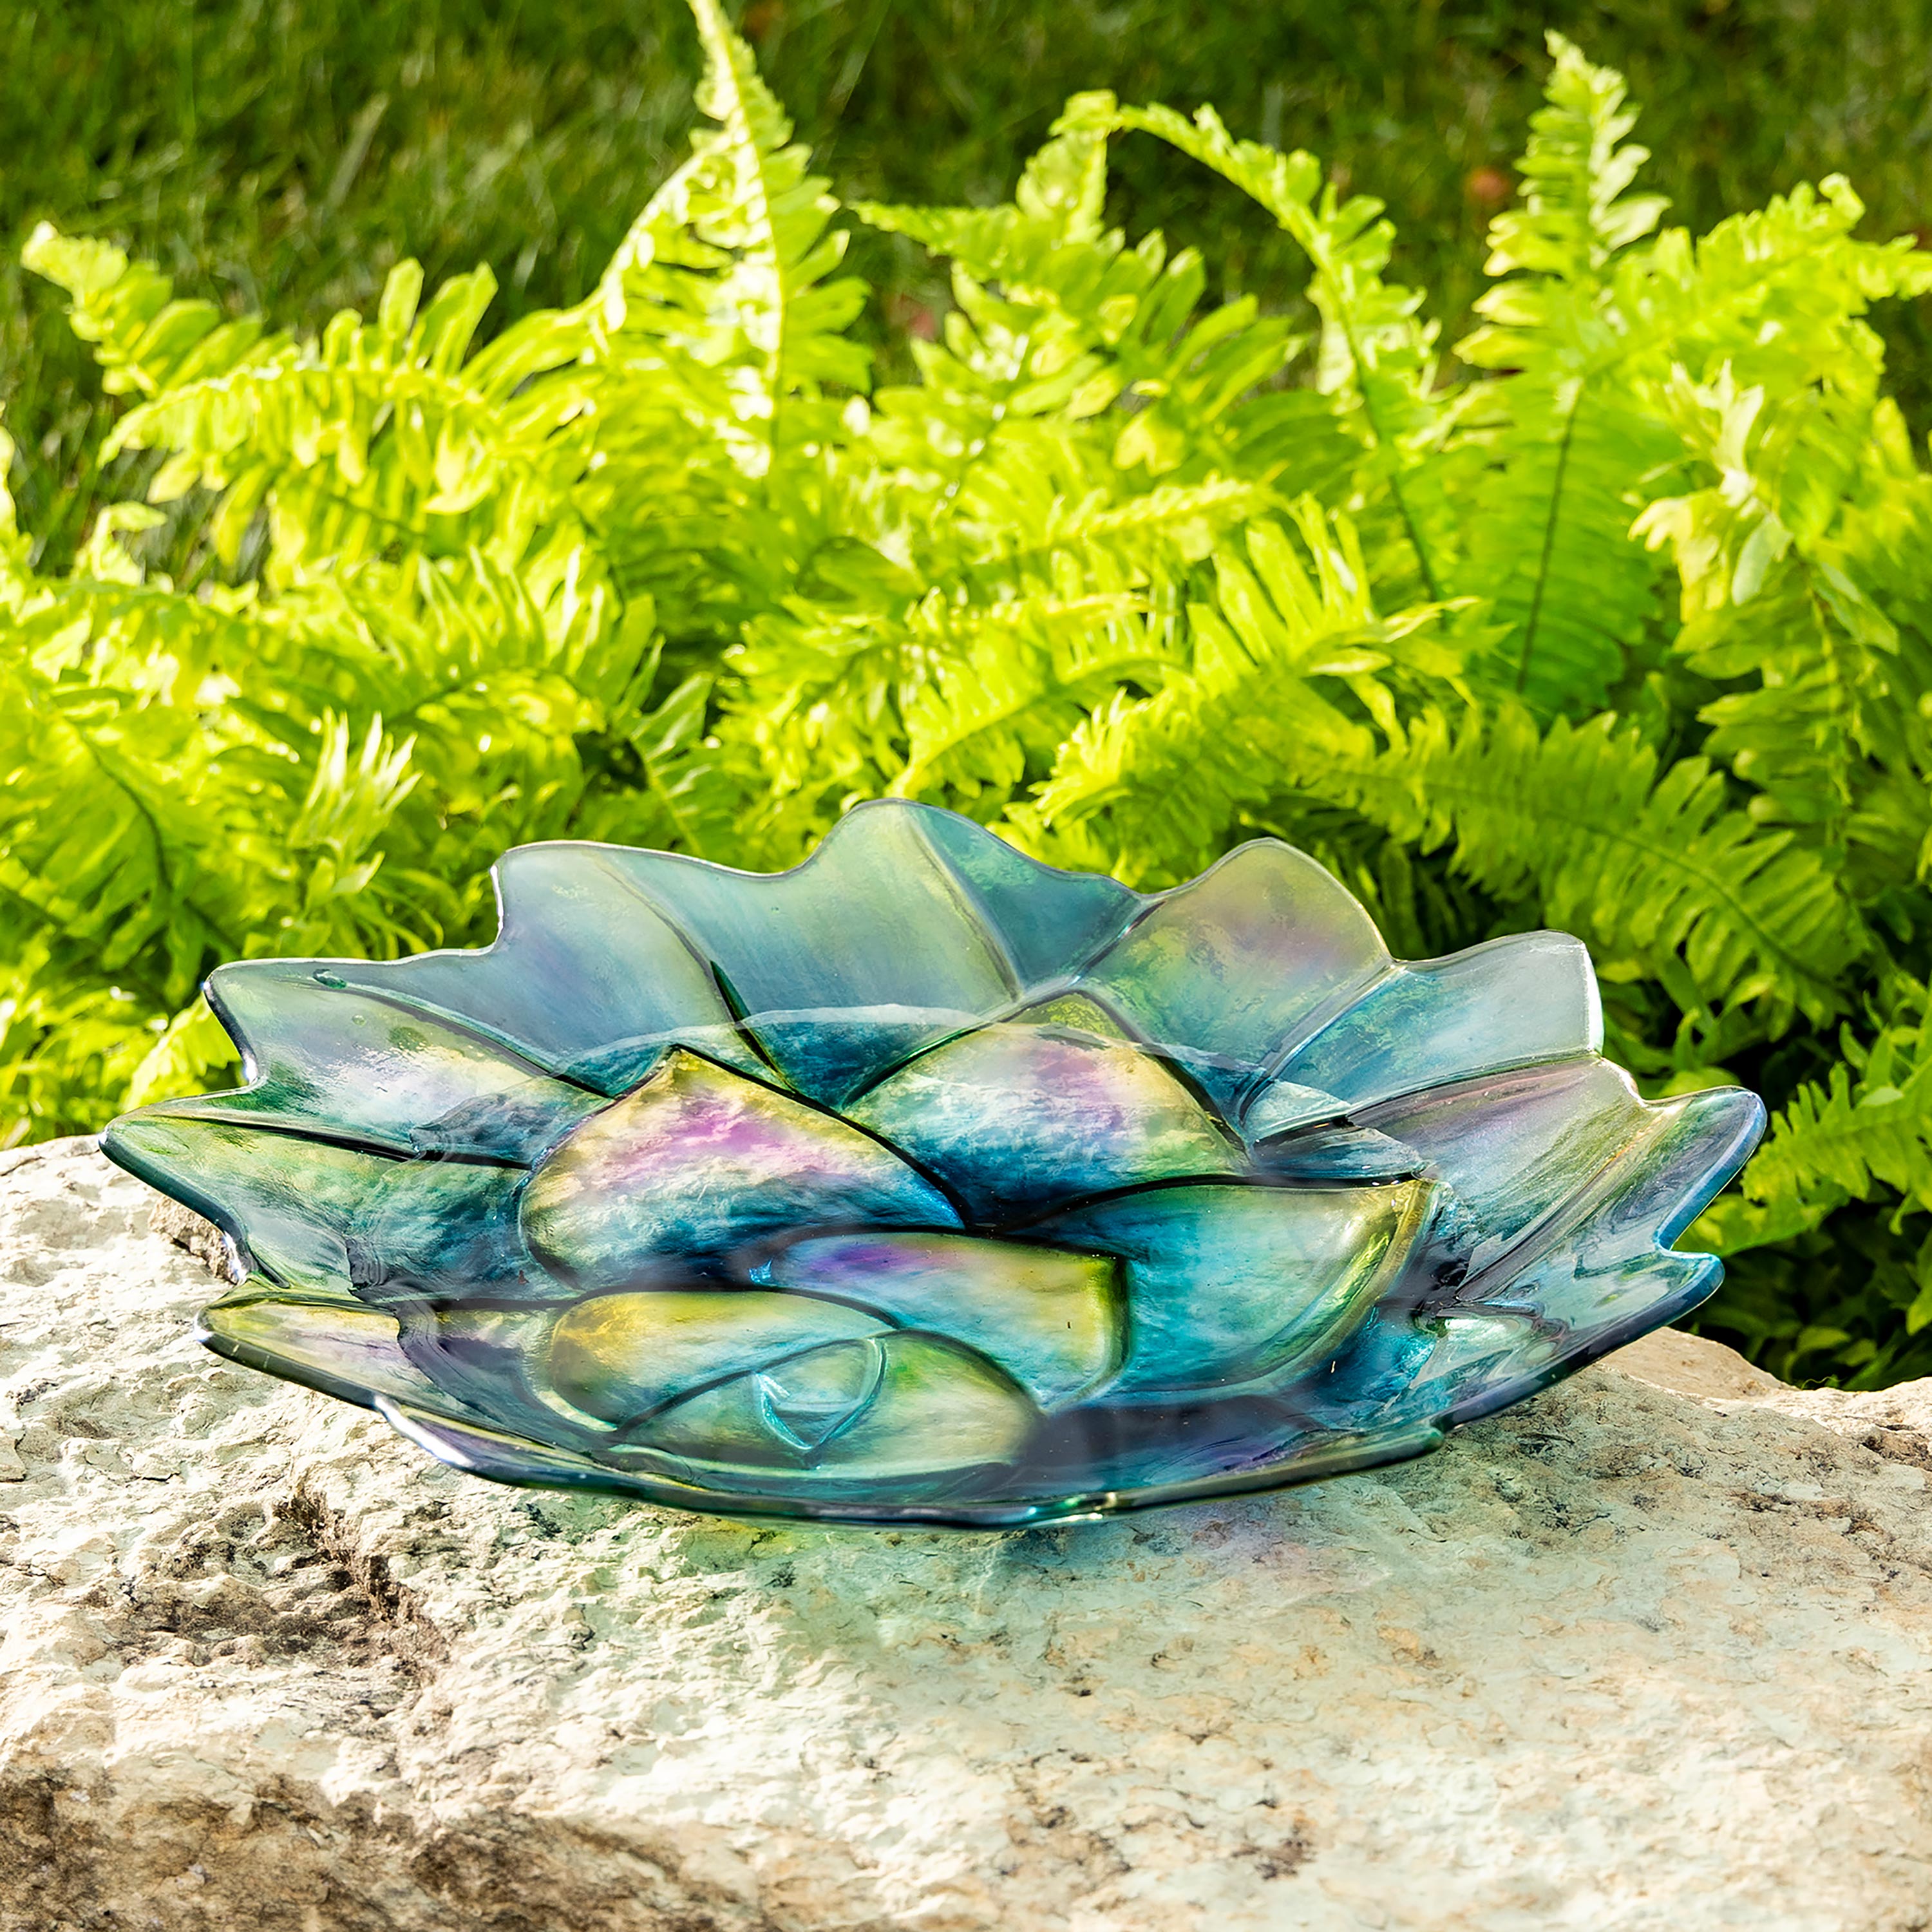 Succulent-Shaped Glass Bird Bath